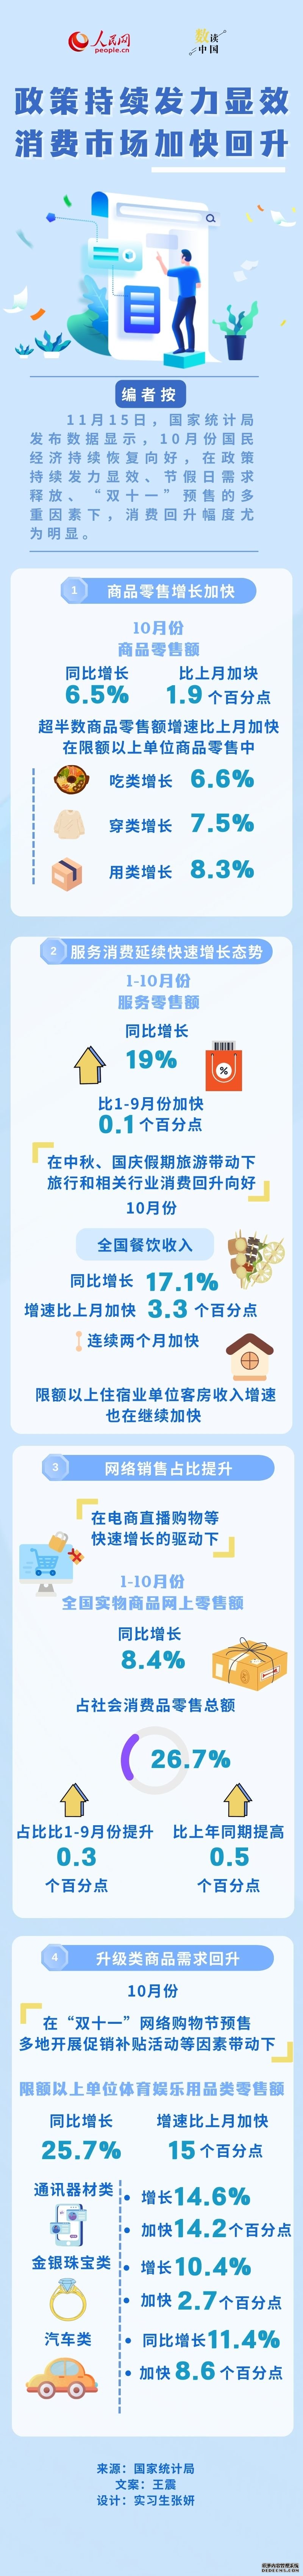 数读中国 | 政策持续发力显效 消费市场加快回升